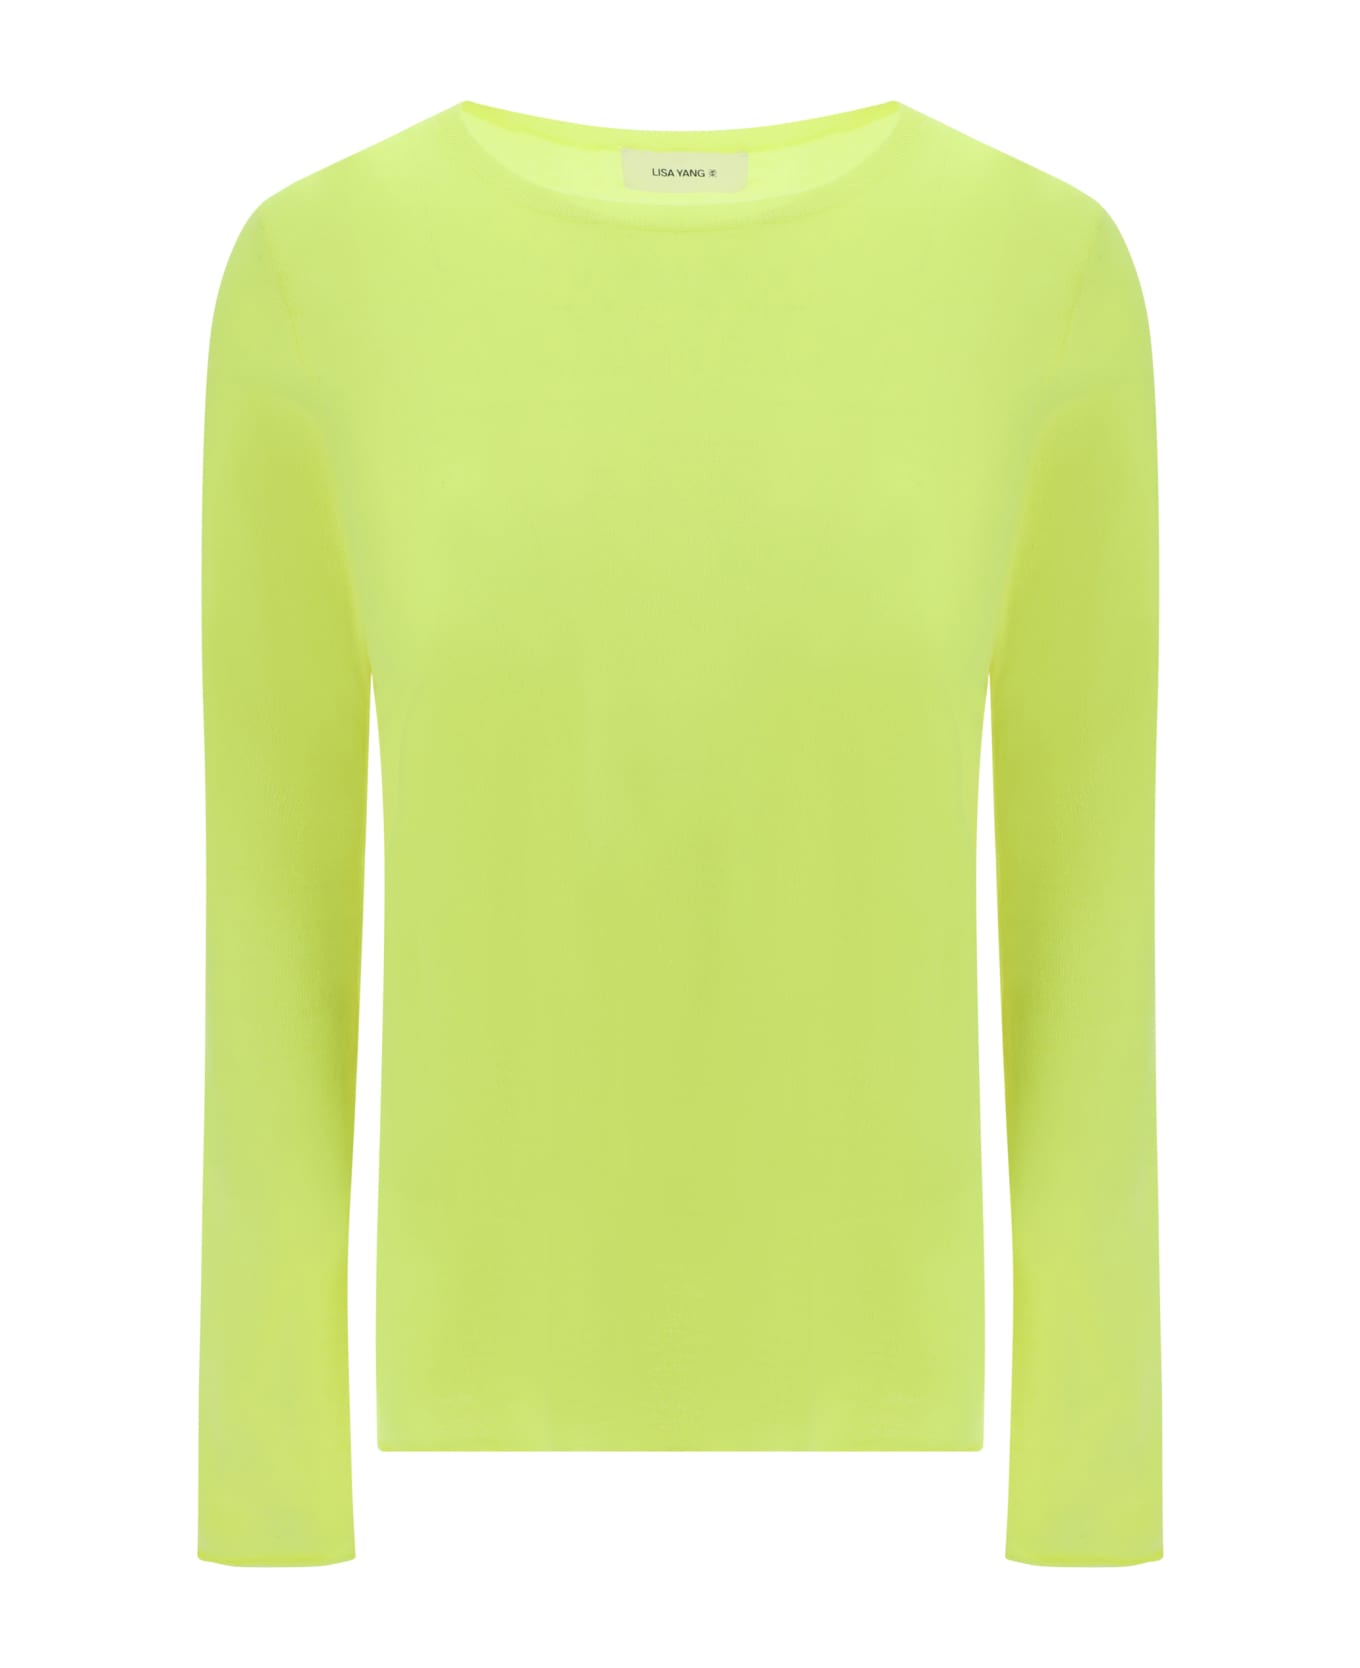 Lisa Yang Alba Sweater - Neon Citrus